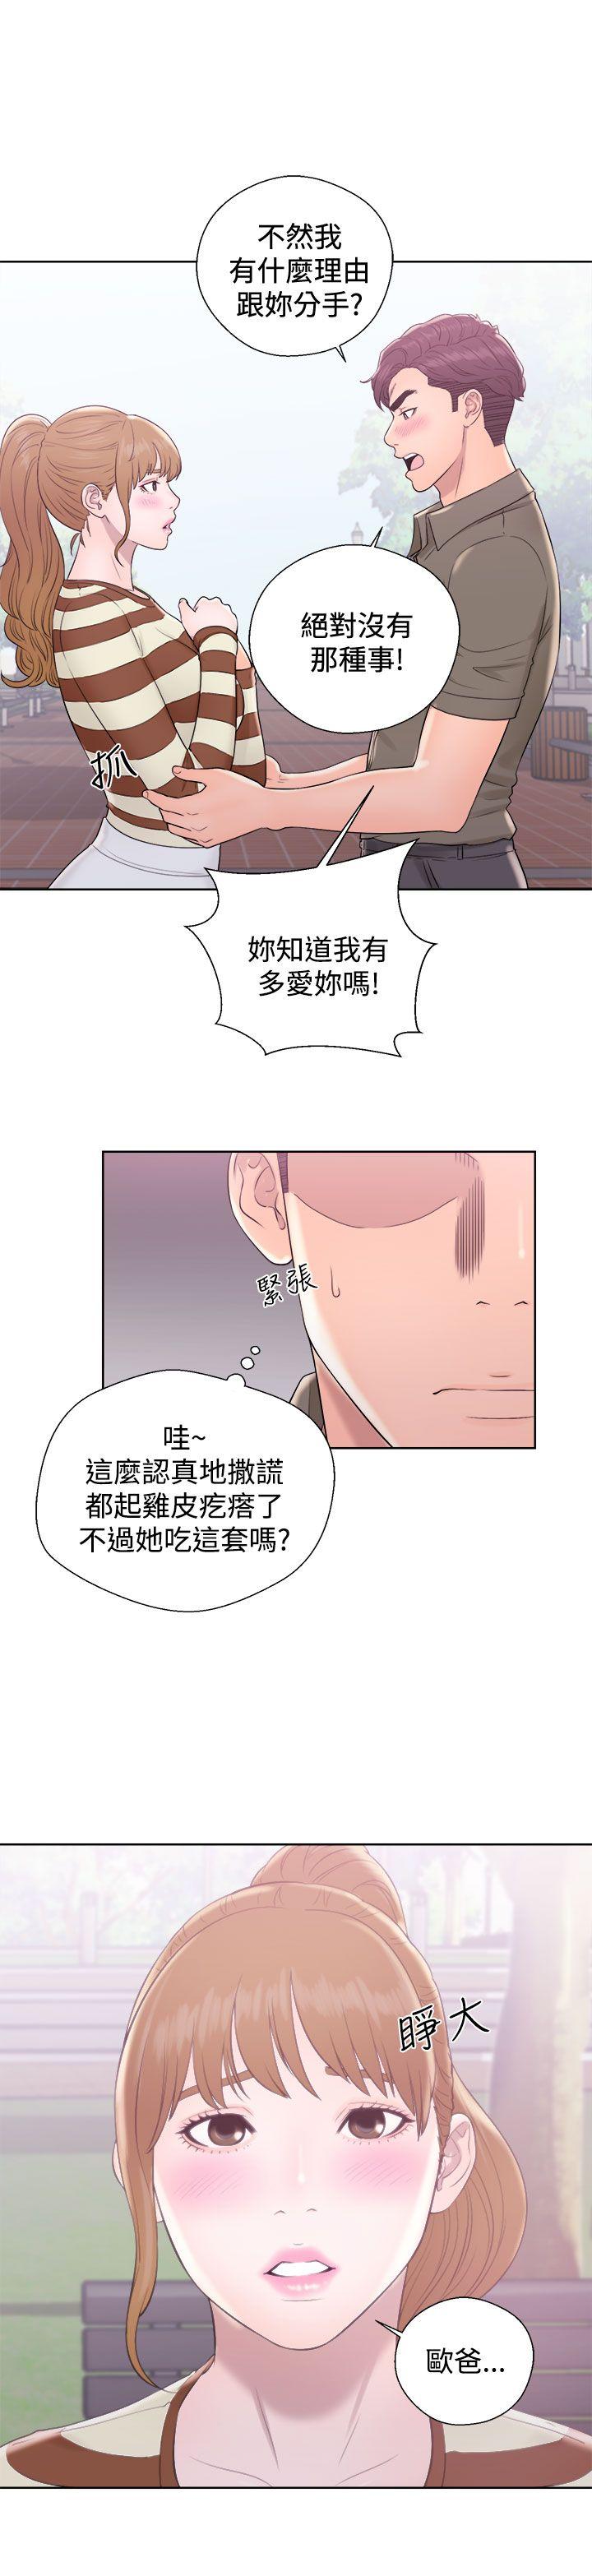 韩国污漫画 青春:逆齡小鮮肉 第8话 31